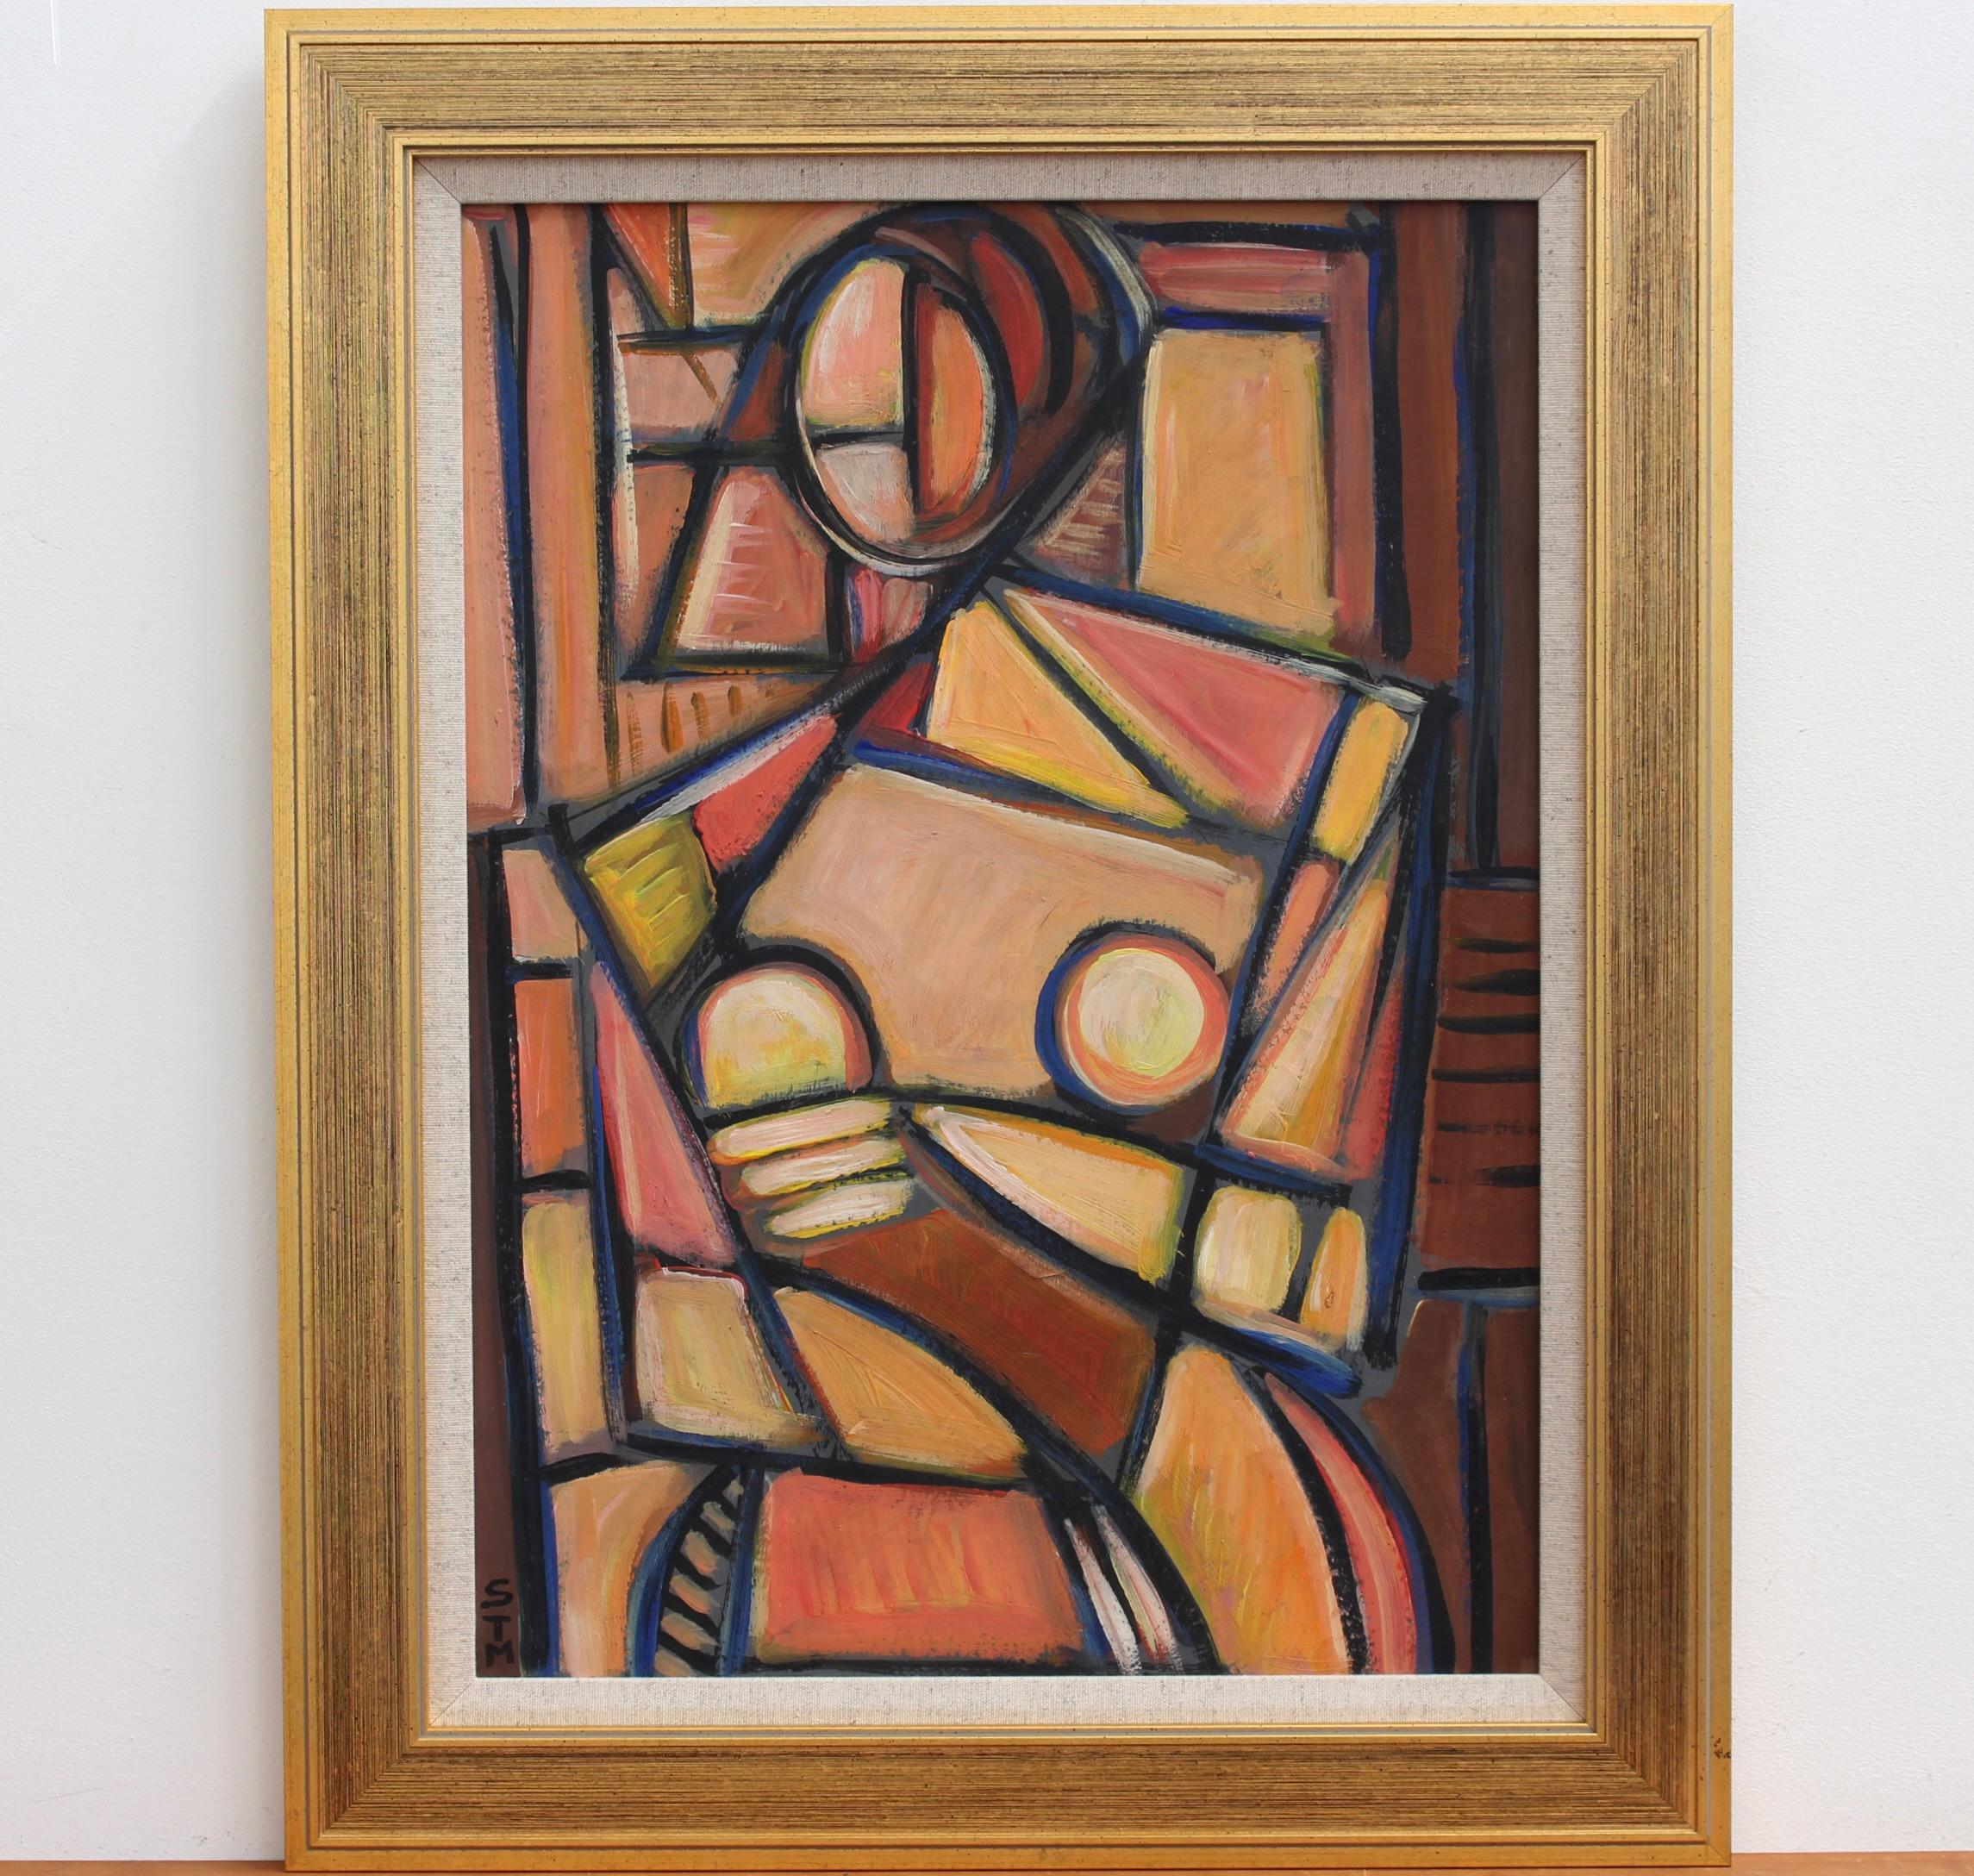 STM Portrait Painting - Portrait of a Cubist Woman